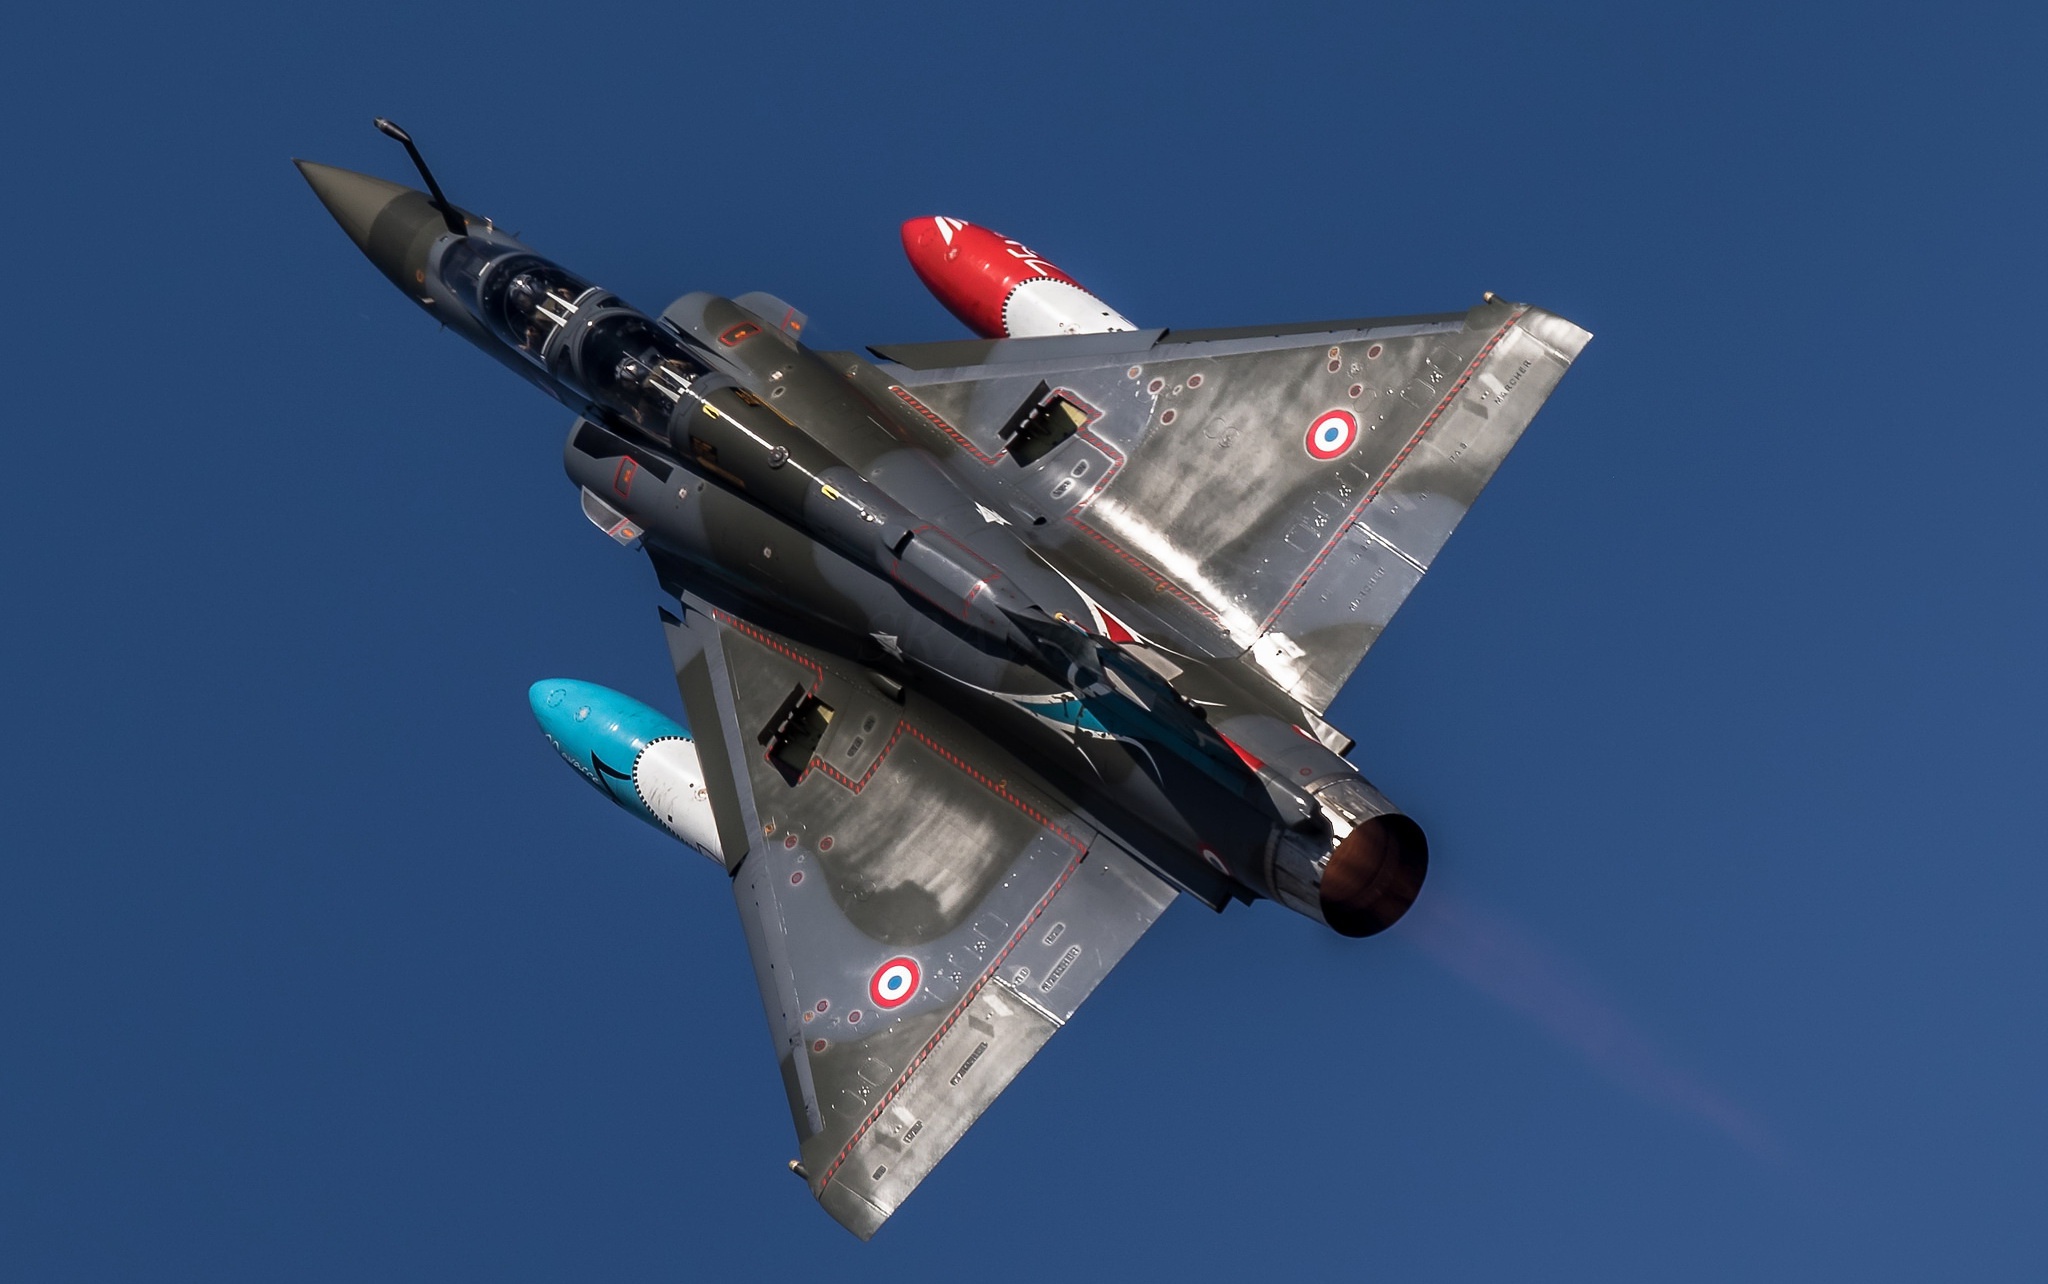 General 2048x1284 aircraft military aircraft Dassault Mirage 2000 military military vehicle Dassault Aviation vehicle french aircraft Mirage 2000